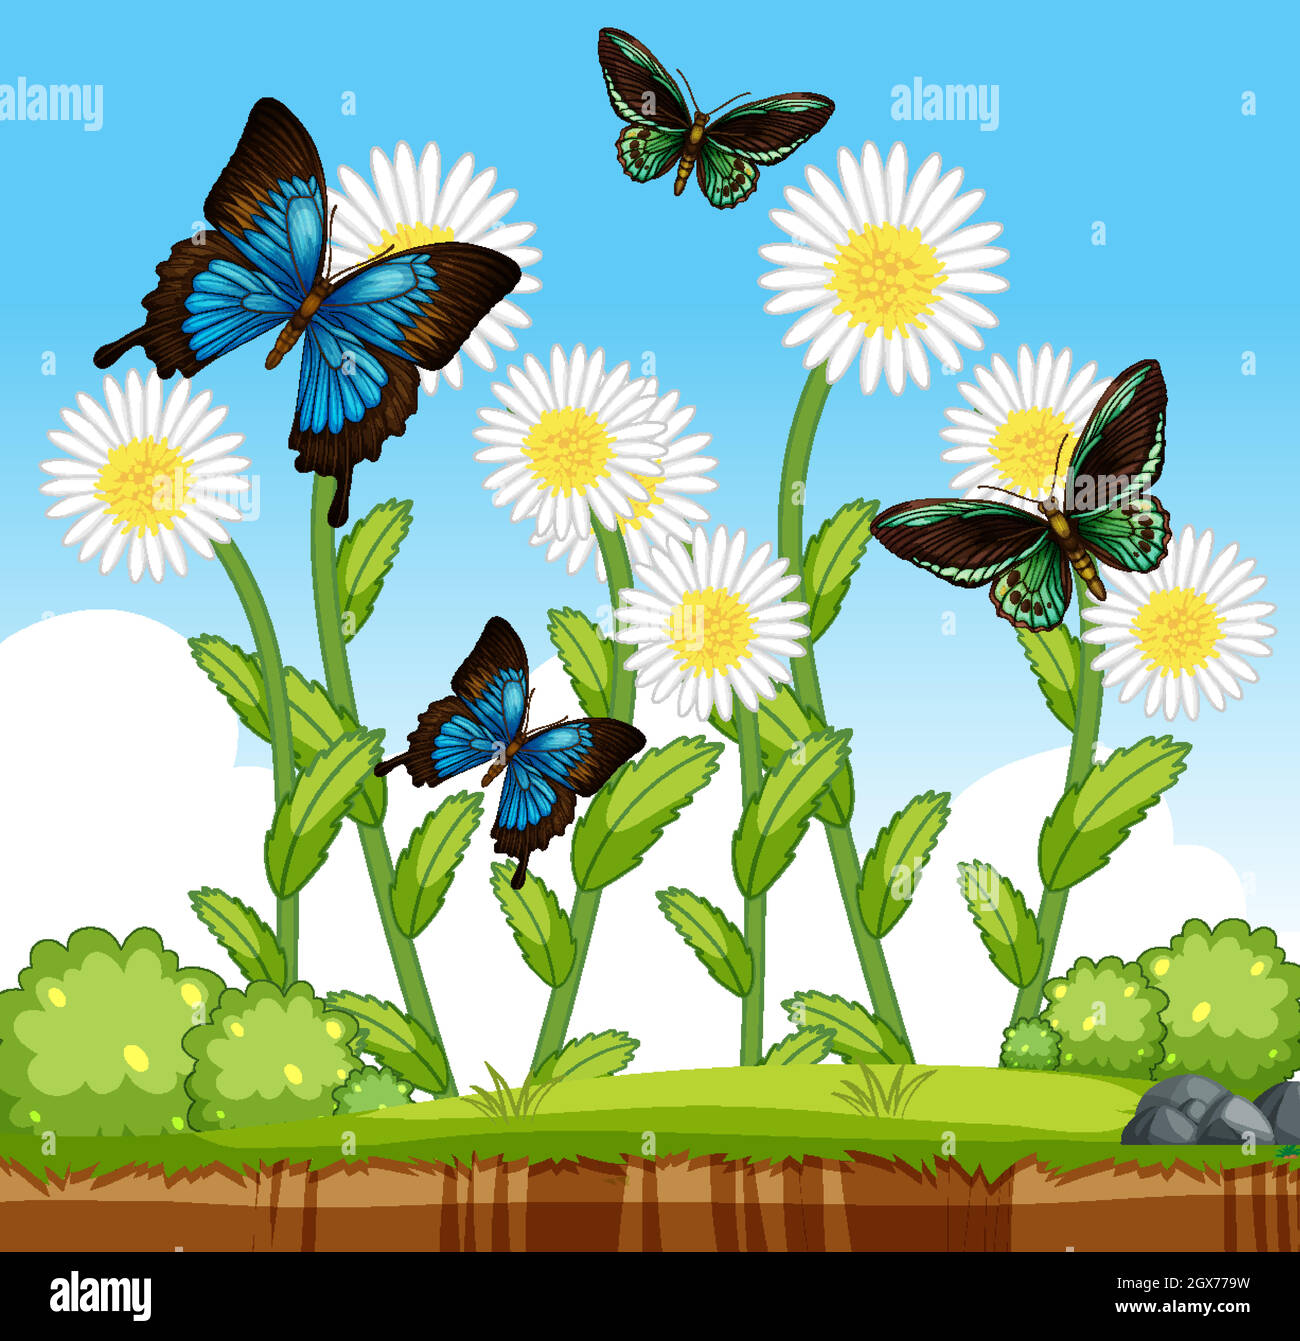 Beaucoup de papillons avec beaucoup de fleurs dans la scène de jardin Illustration de Vecteur